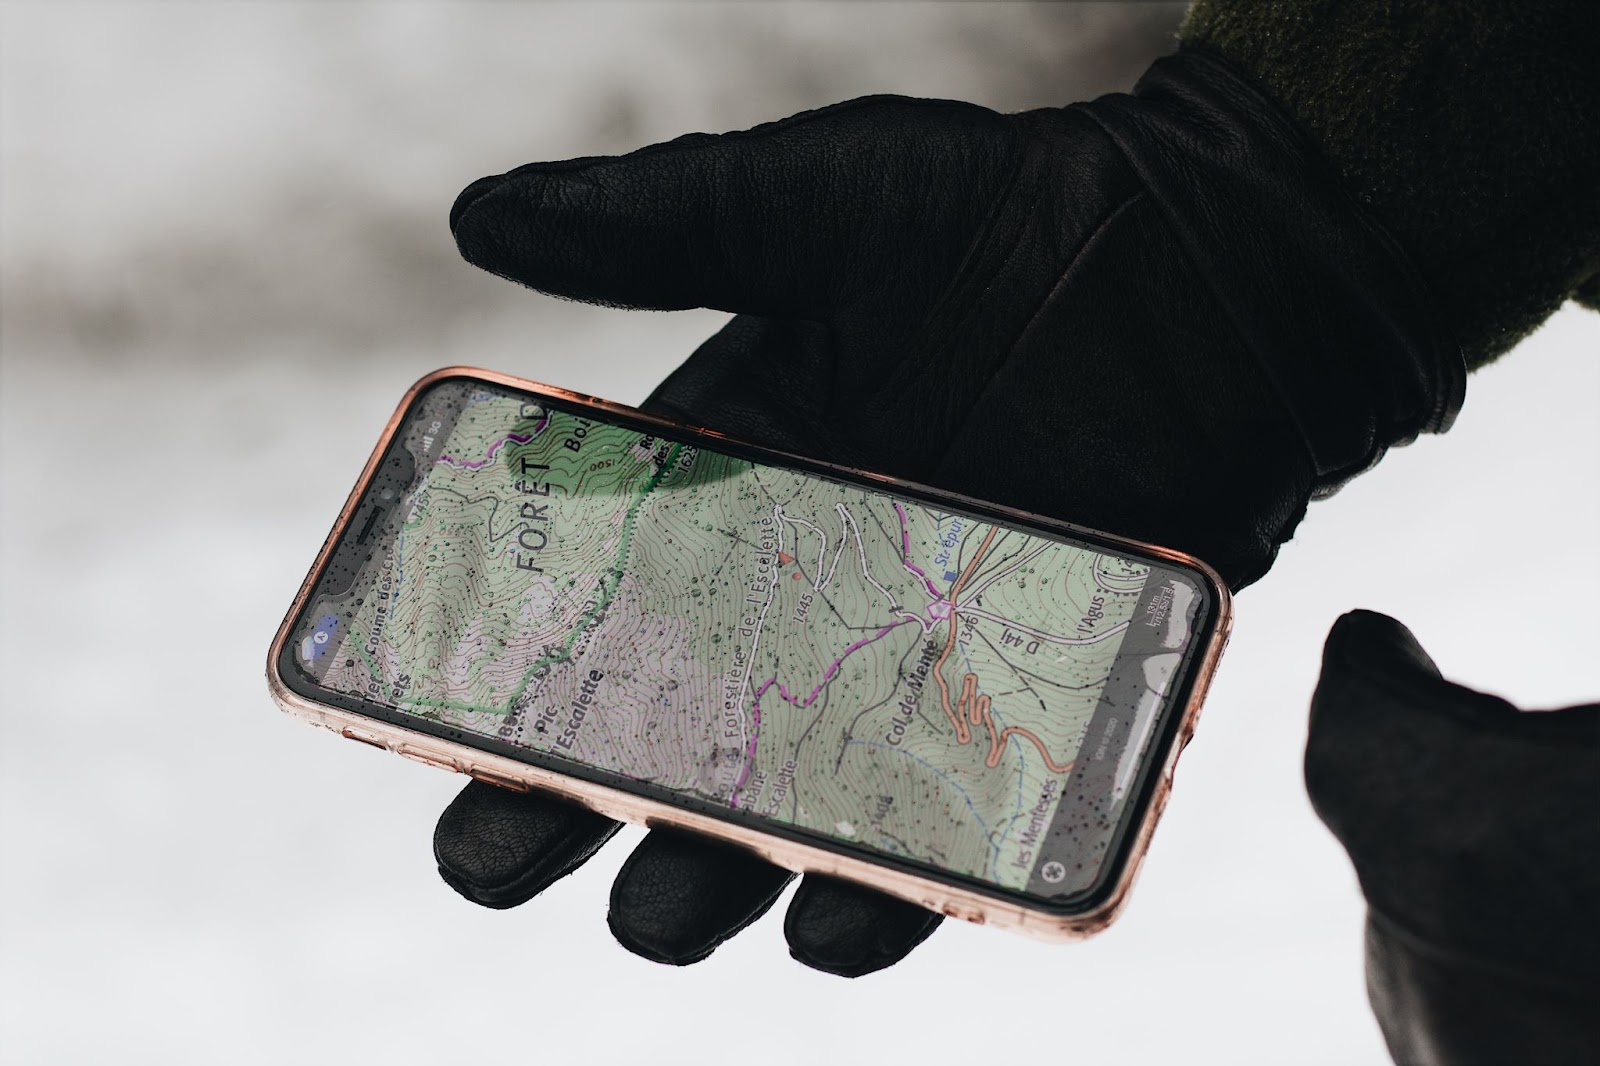 Come scegliere un GPS tracker adatto?